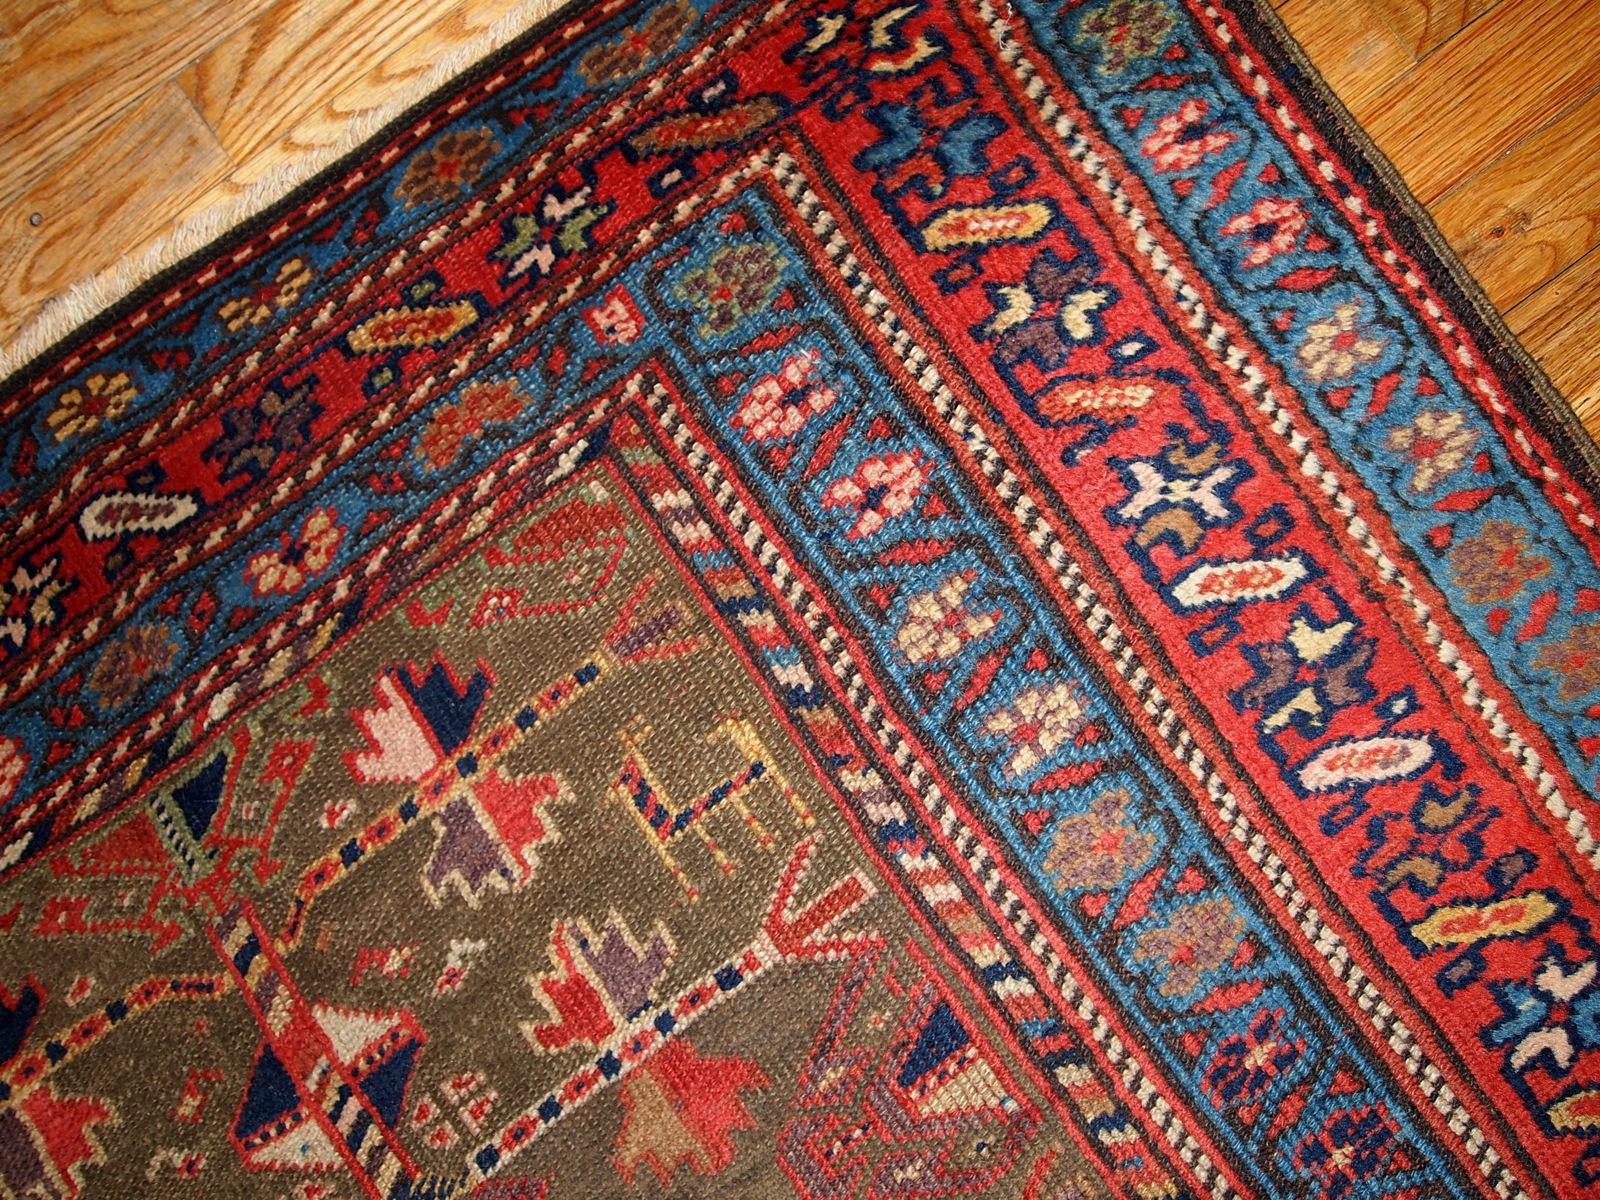 Antiker Teppich im kurdischen Stil in sumpfigen grünen, roten und blauen Farben. Dieser Teppich ist aus dem Ende des 19. Jahrhunderts in gutem Zustand. Maße: 4' x 7.6' (122cm x 231cm).